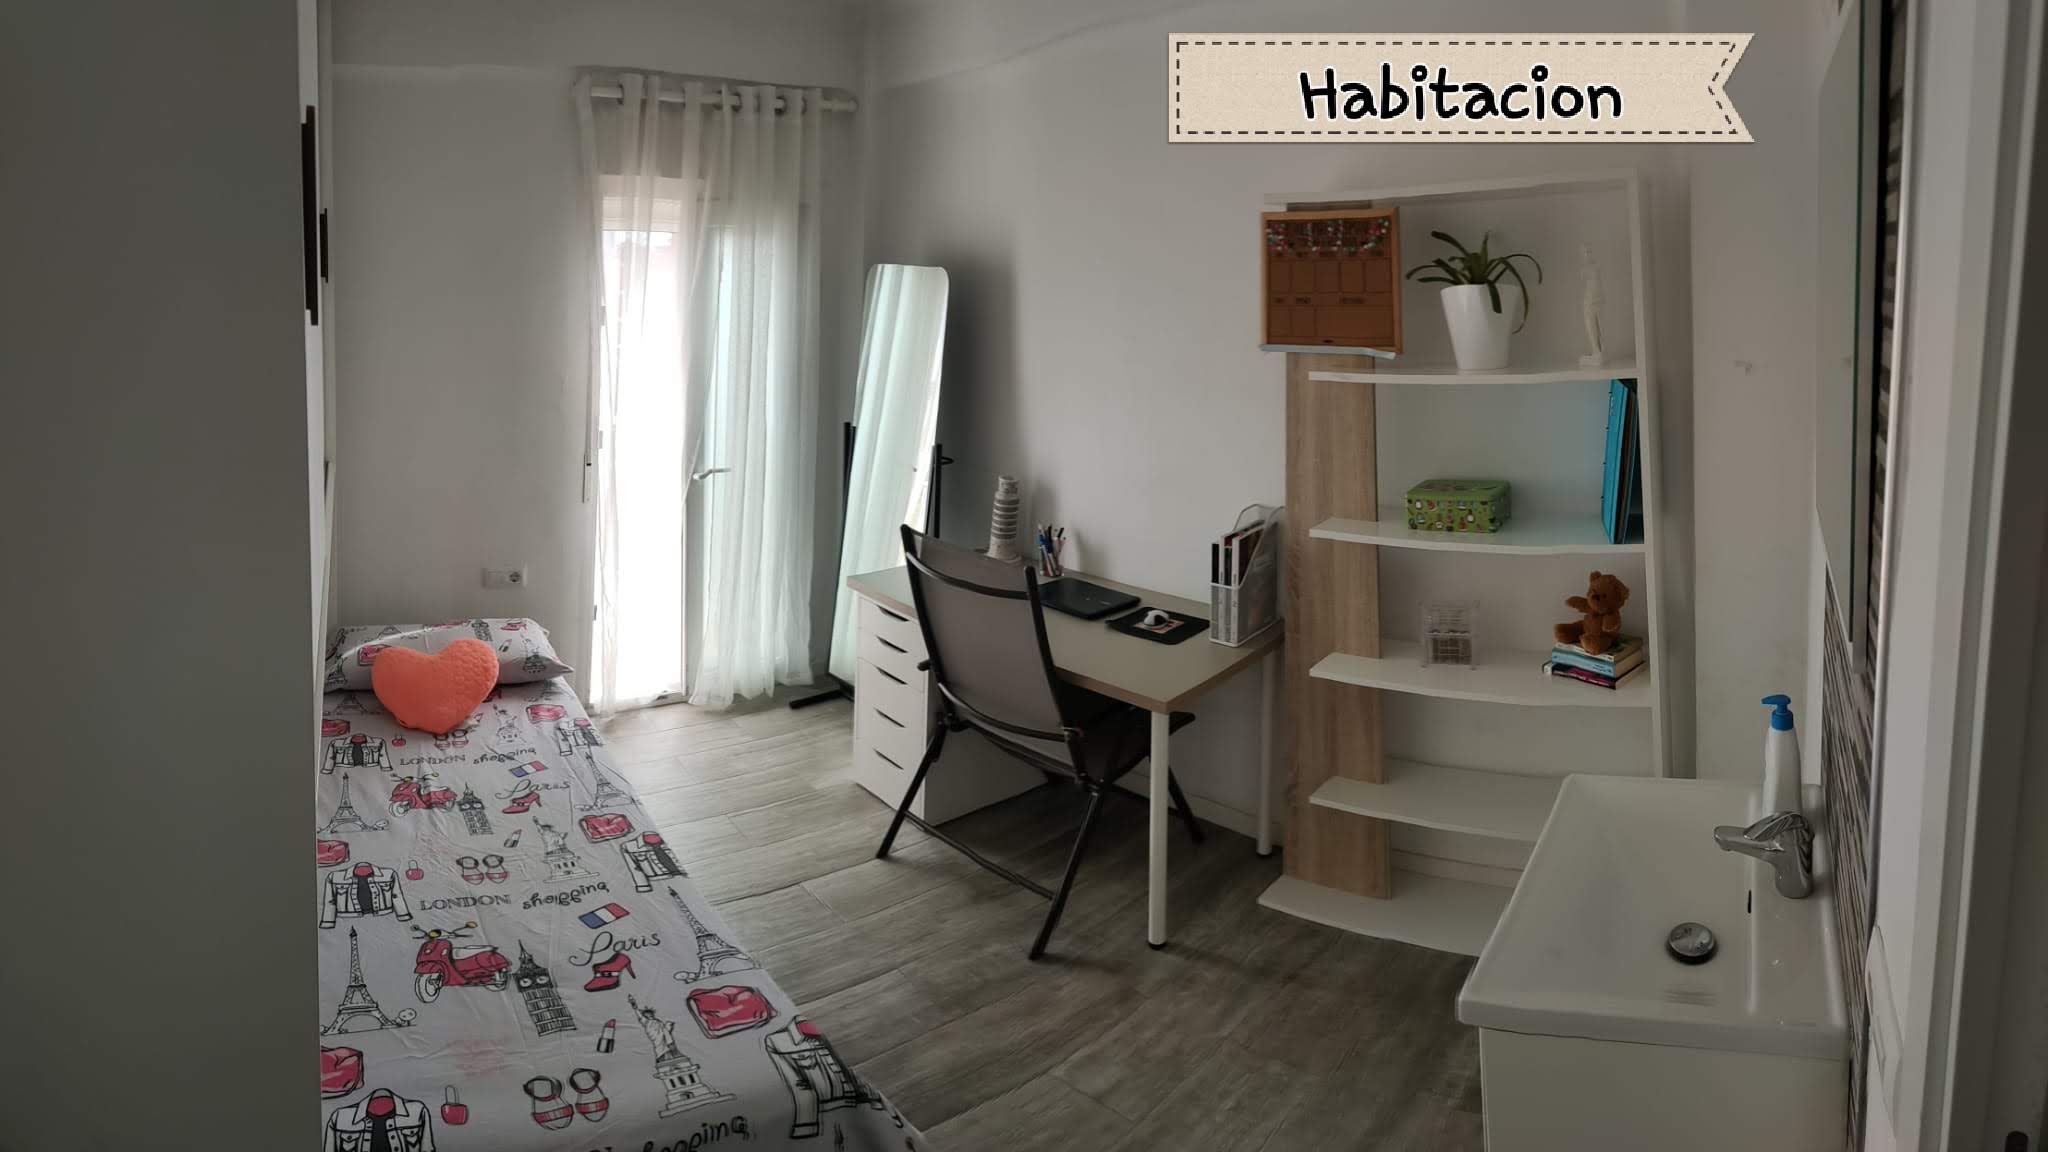 Estupenda habitación con balcón a calle en piso de 4 habitaciones, Sant Martí